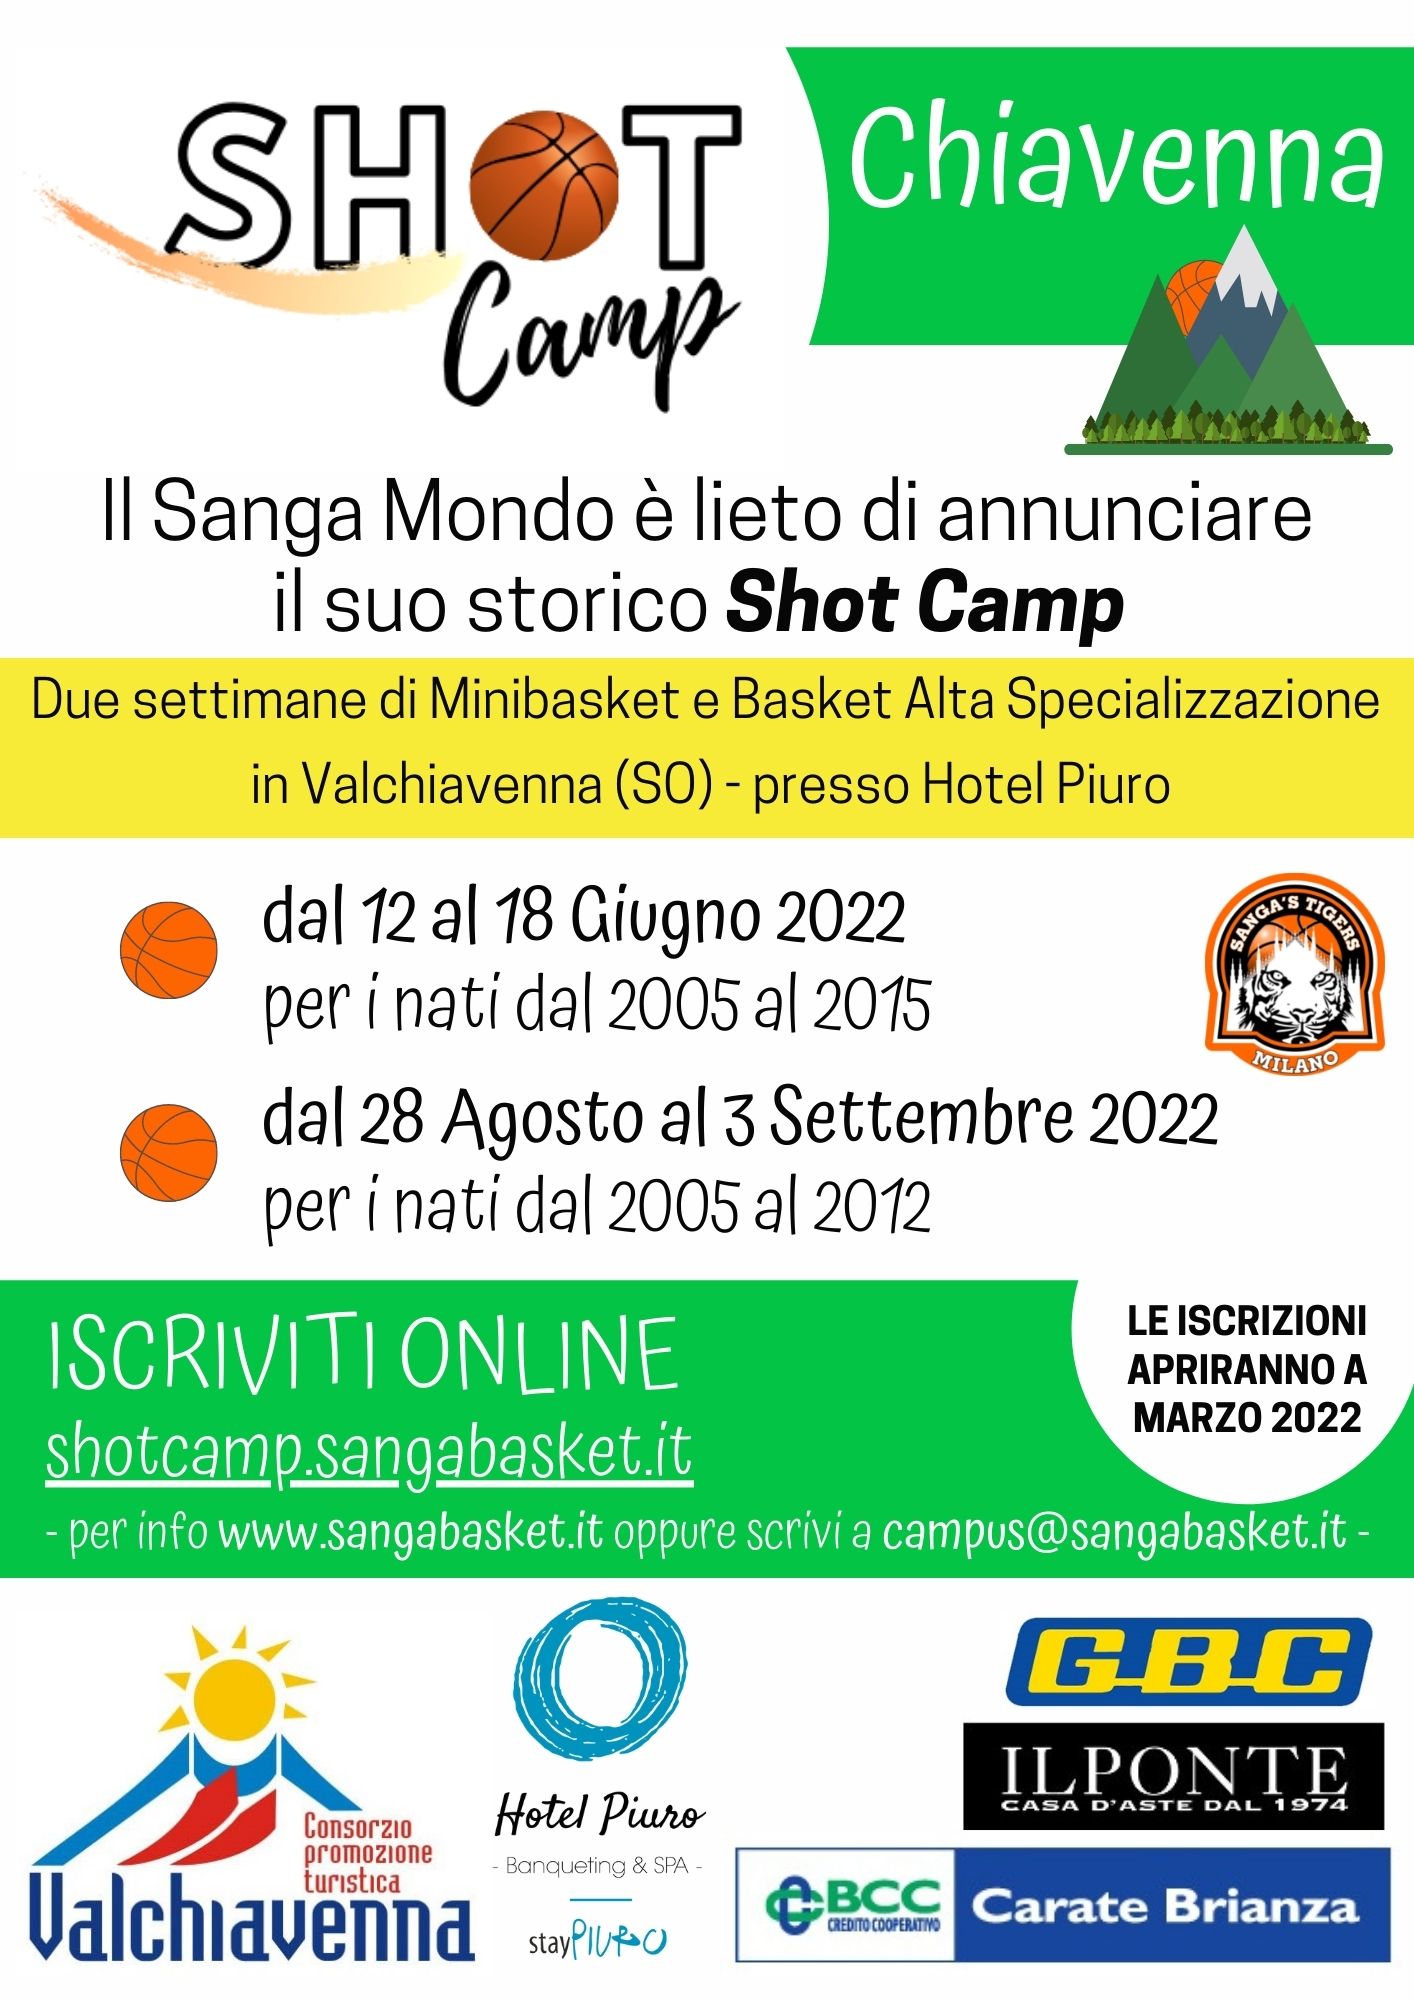 Shot camp